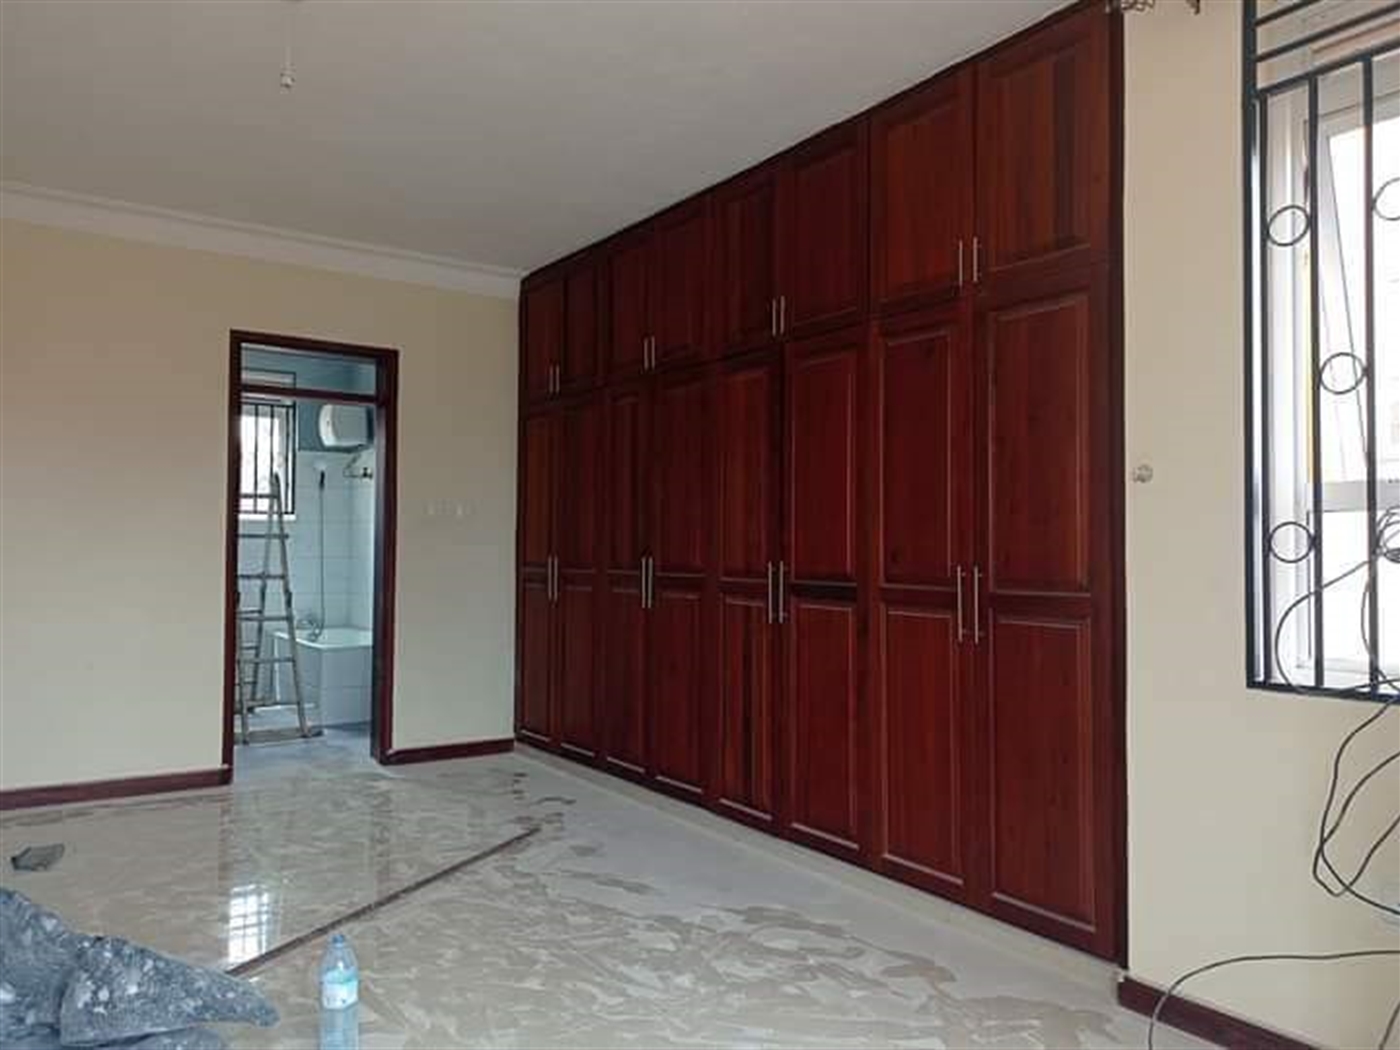 Apartment for rent in Kiwaatule Kampala